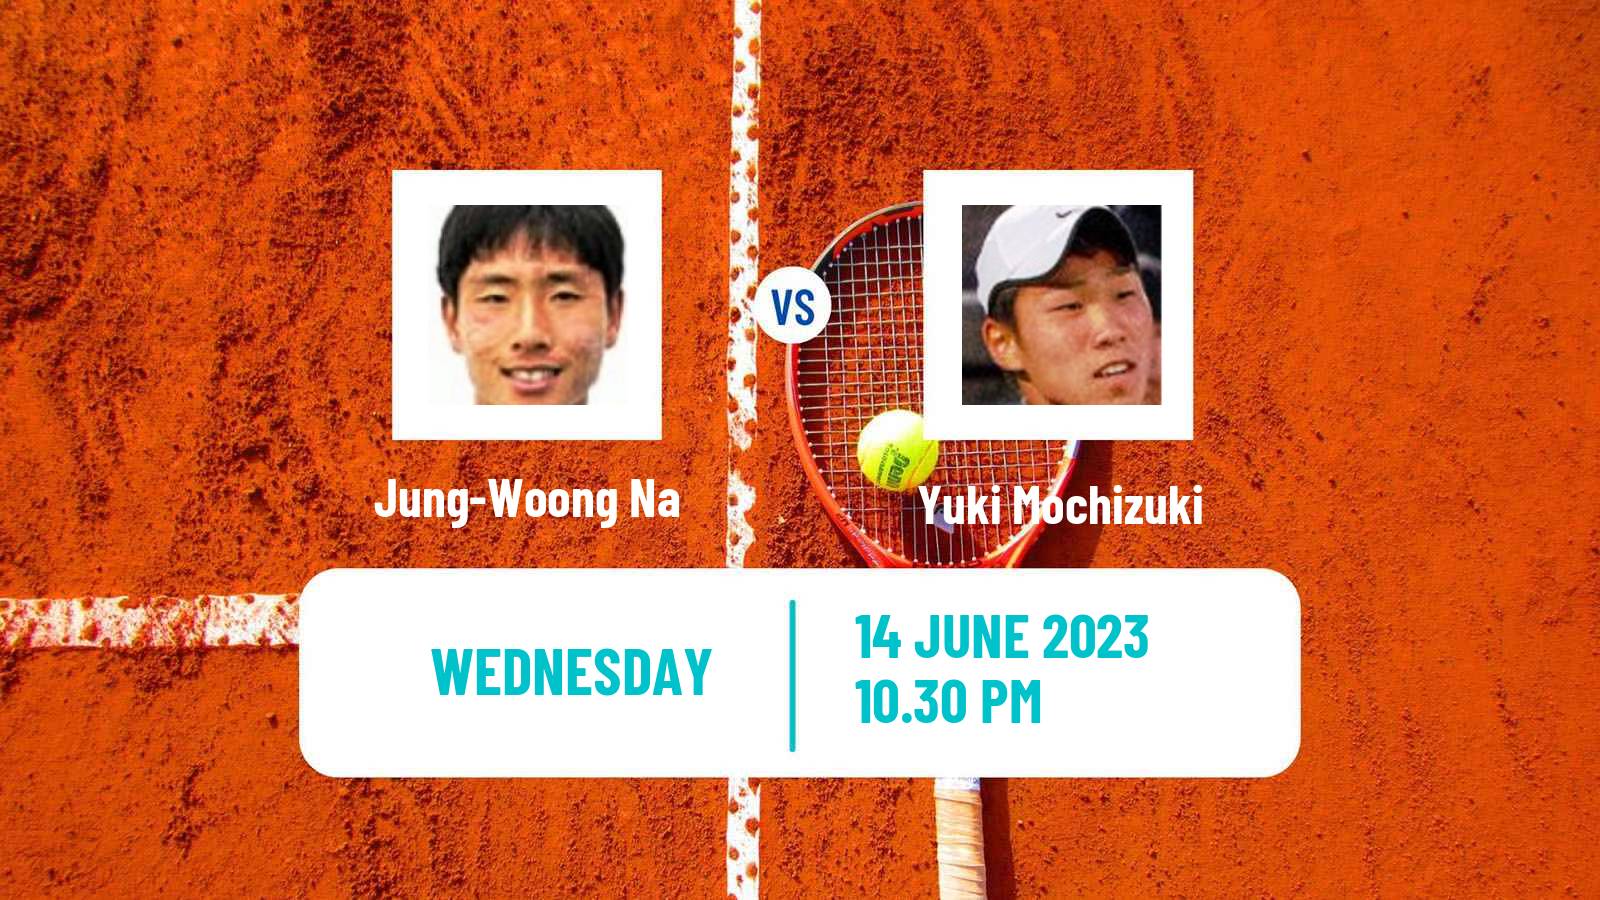 Tennis ITF M25 Changwon Men Jung-Woong Na - Yuki Mochizuki